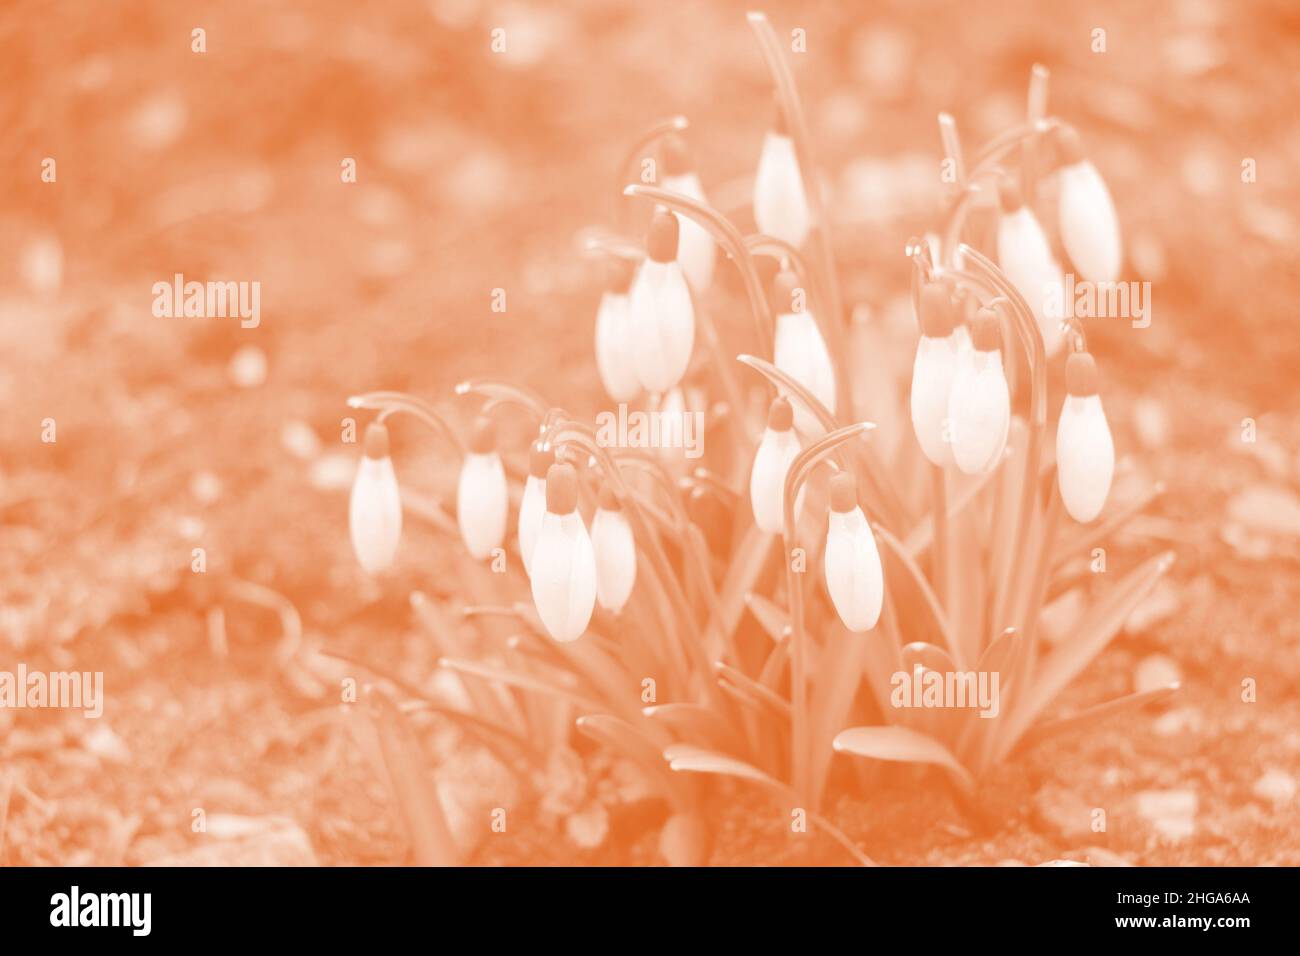 Schneeglöckchen Frühlingsblumen. Zarte Schneegropfenblume eines der Frühlingssymbole, das uns sagt, dass der Winter vergeht und der Frühling kommt. Stockfoto